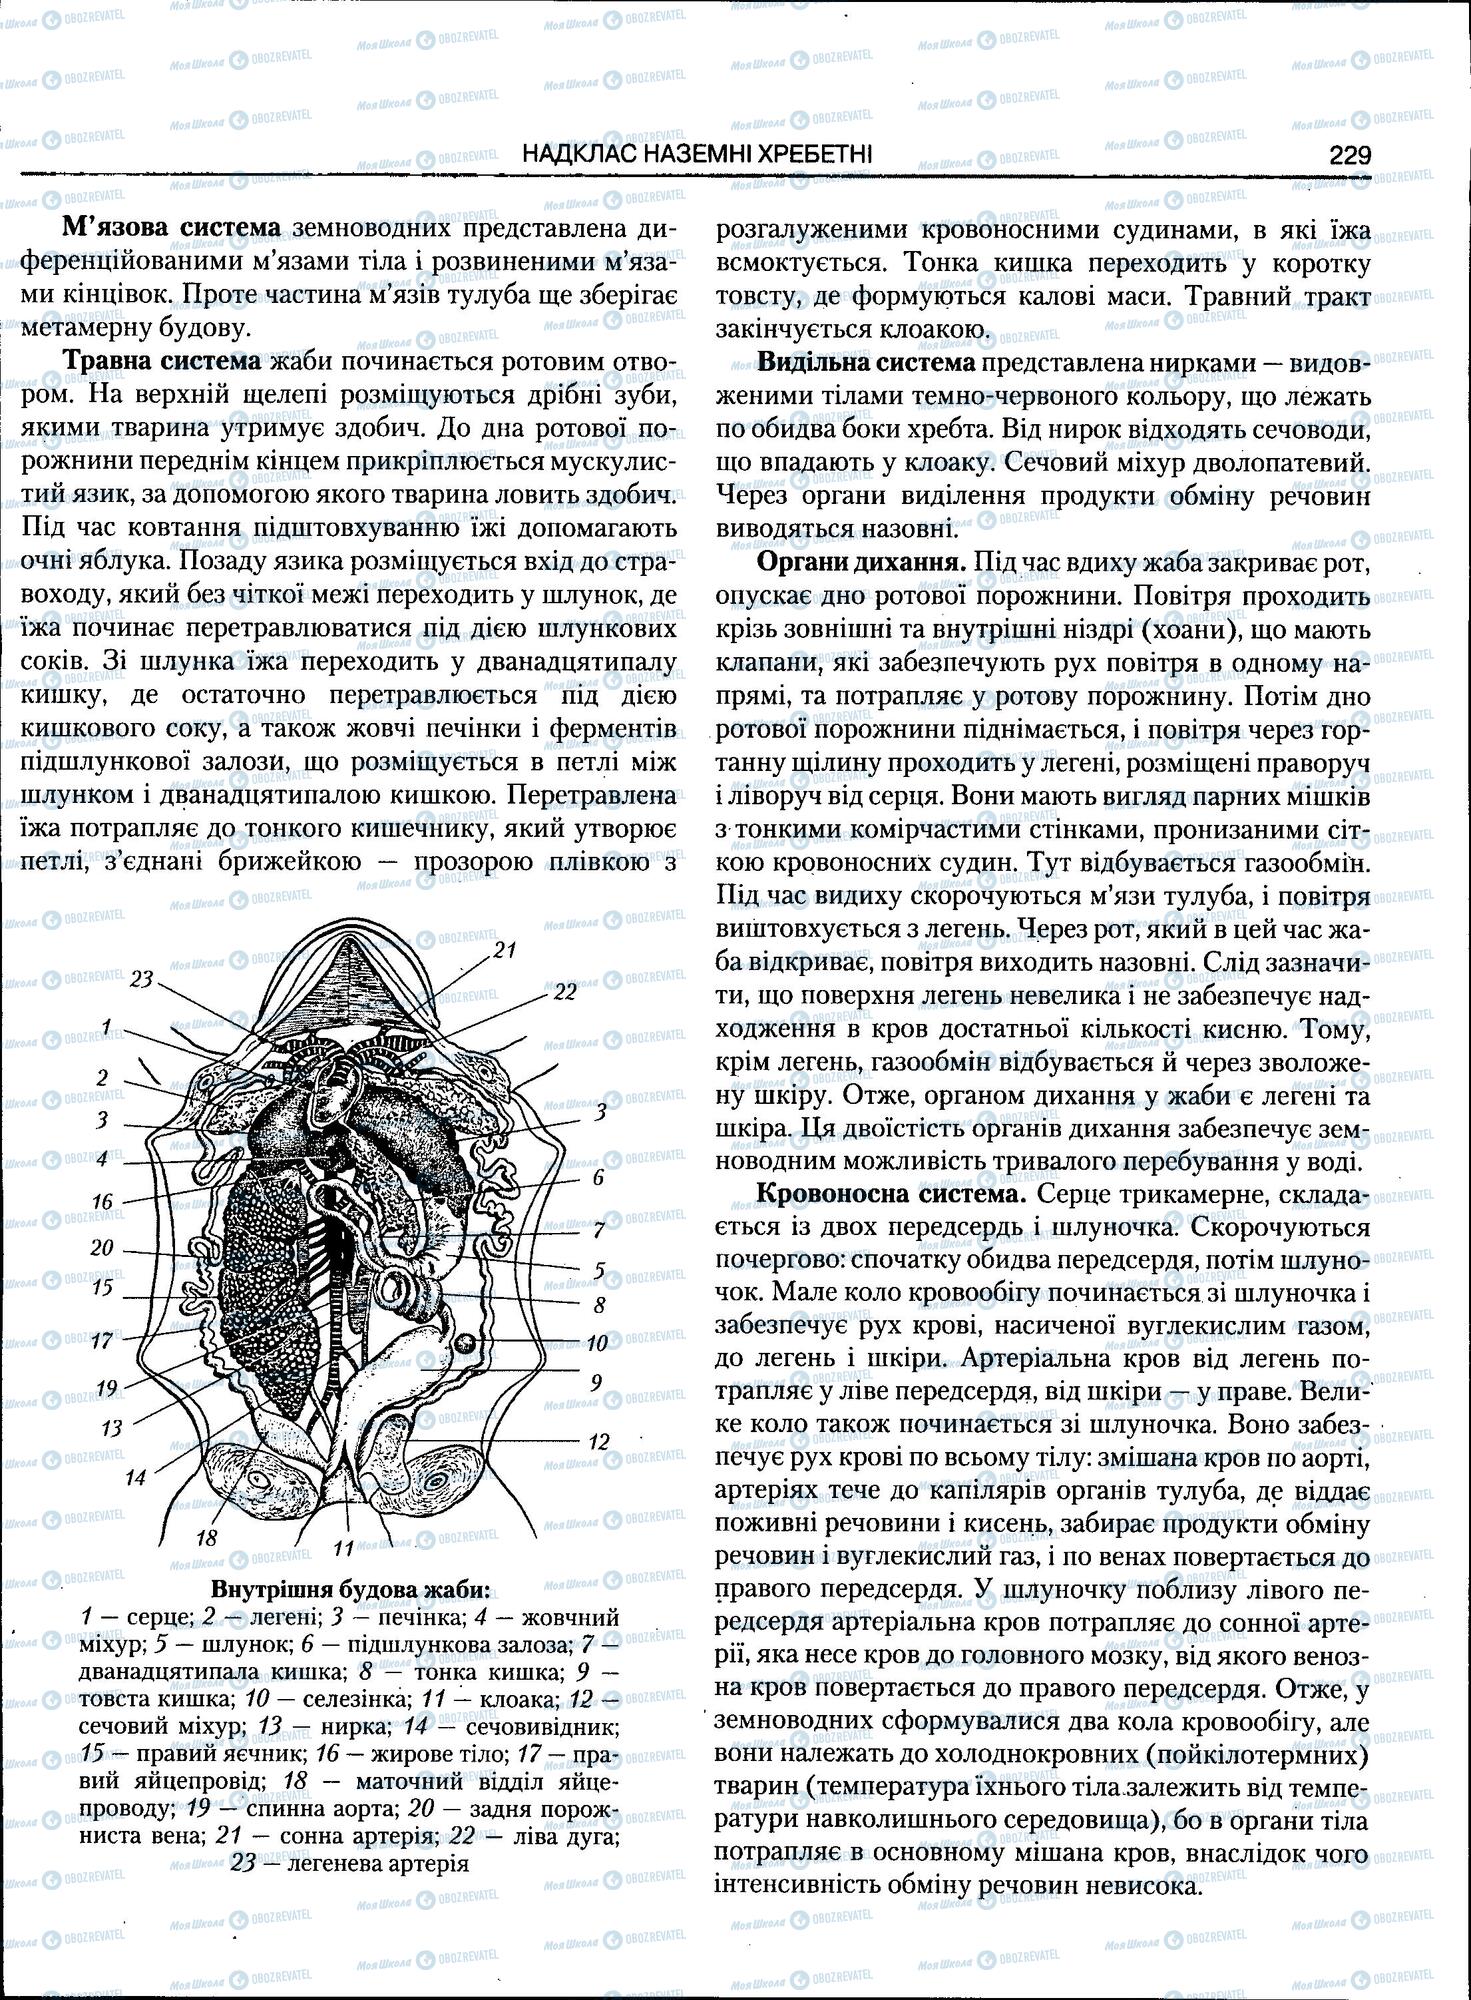 ЗНО Биология 11 класс страница 229